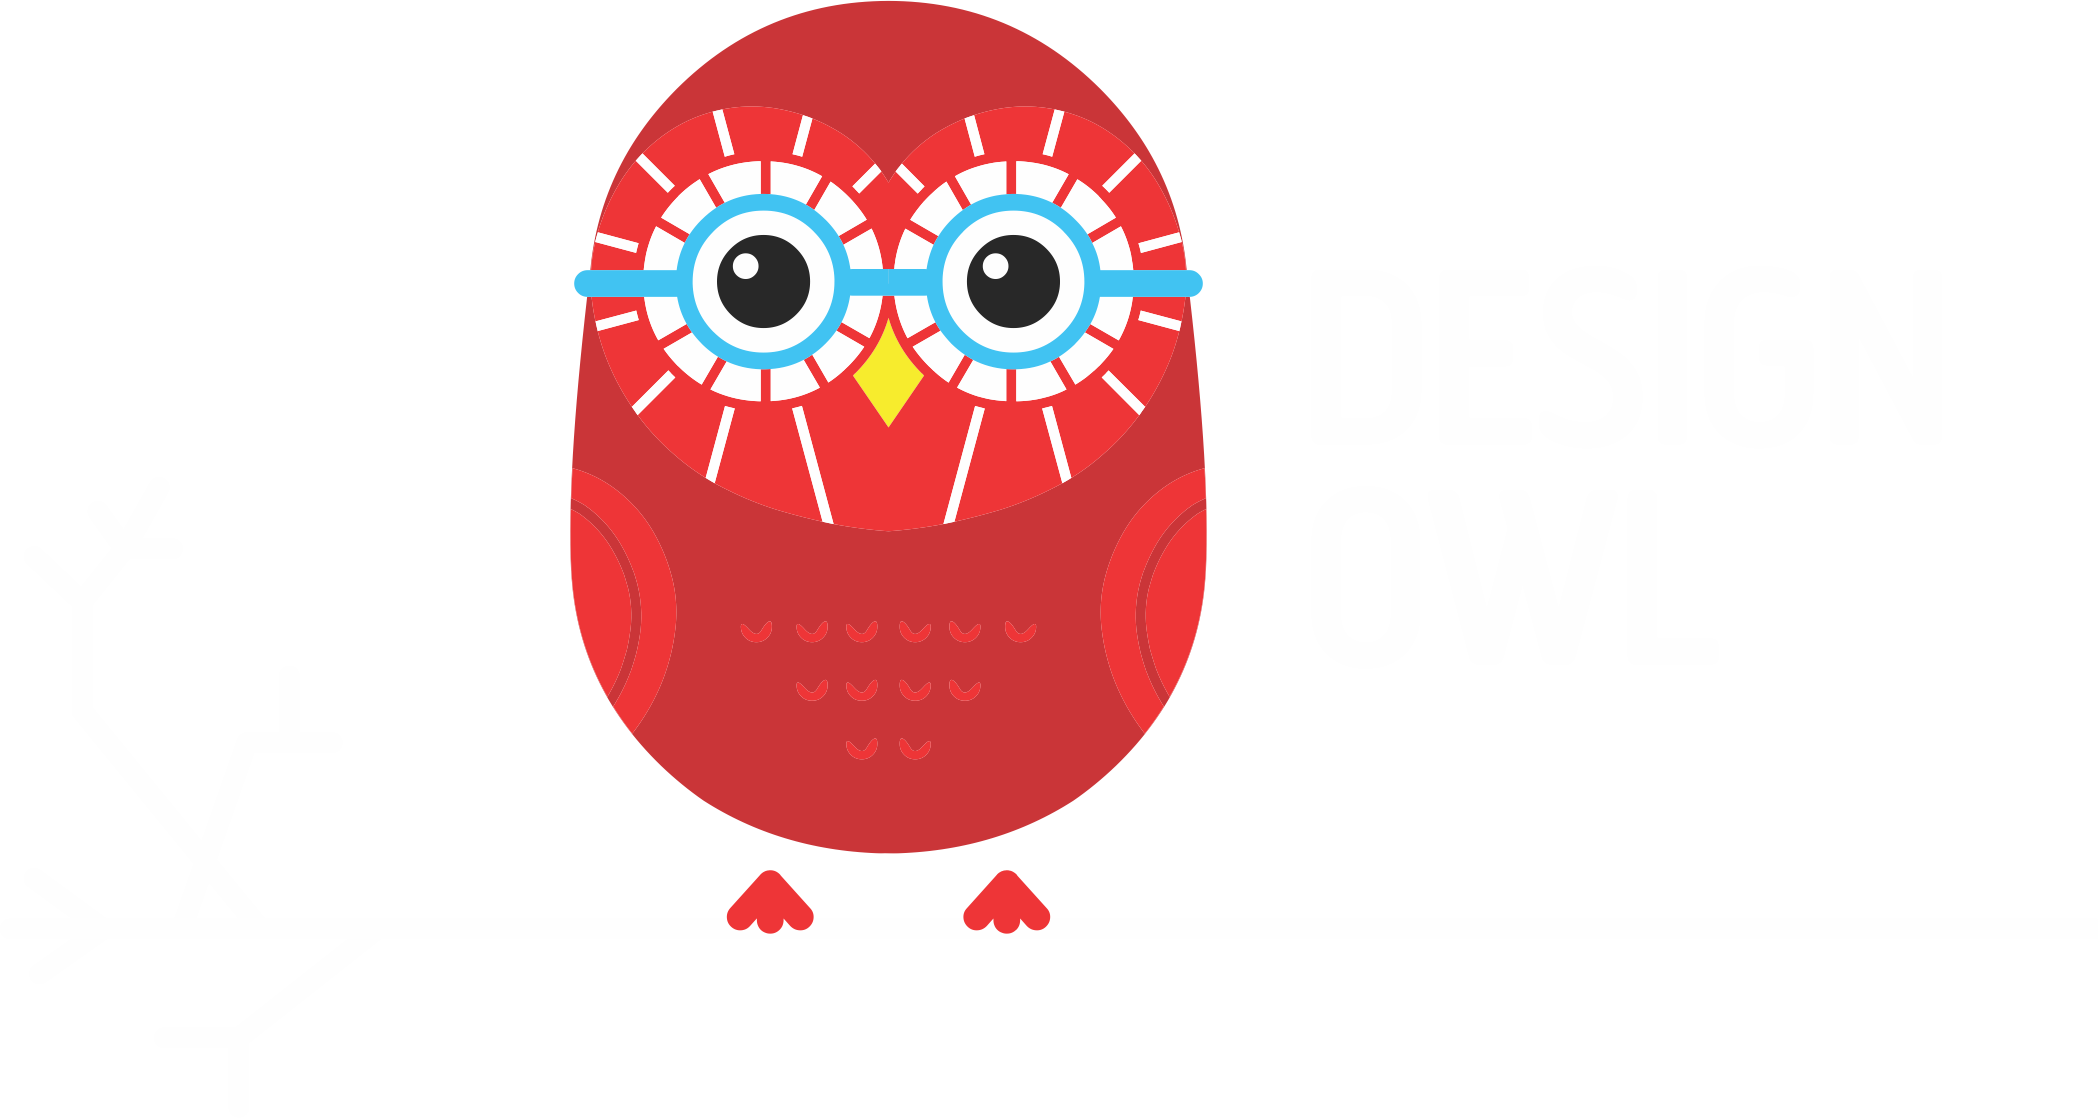 Design Owl